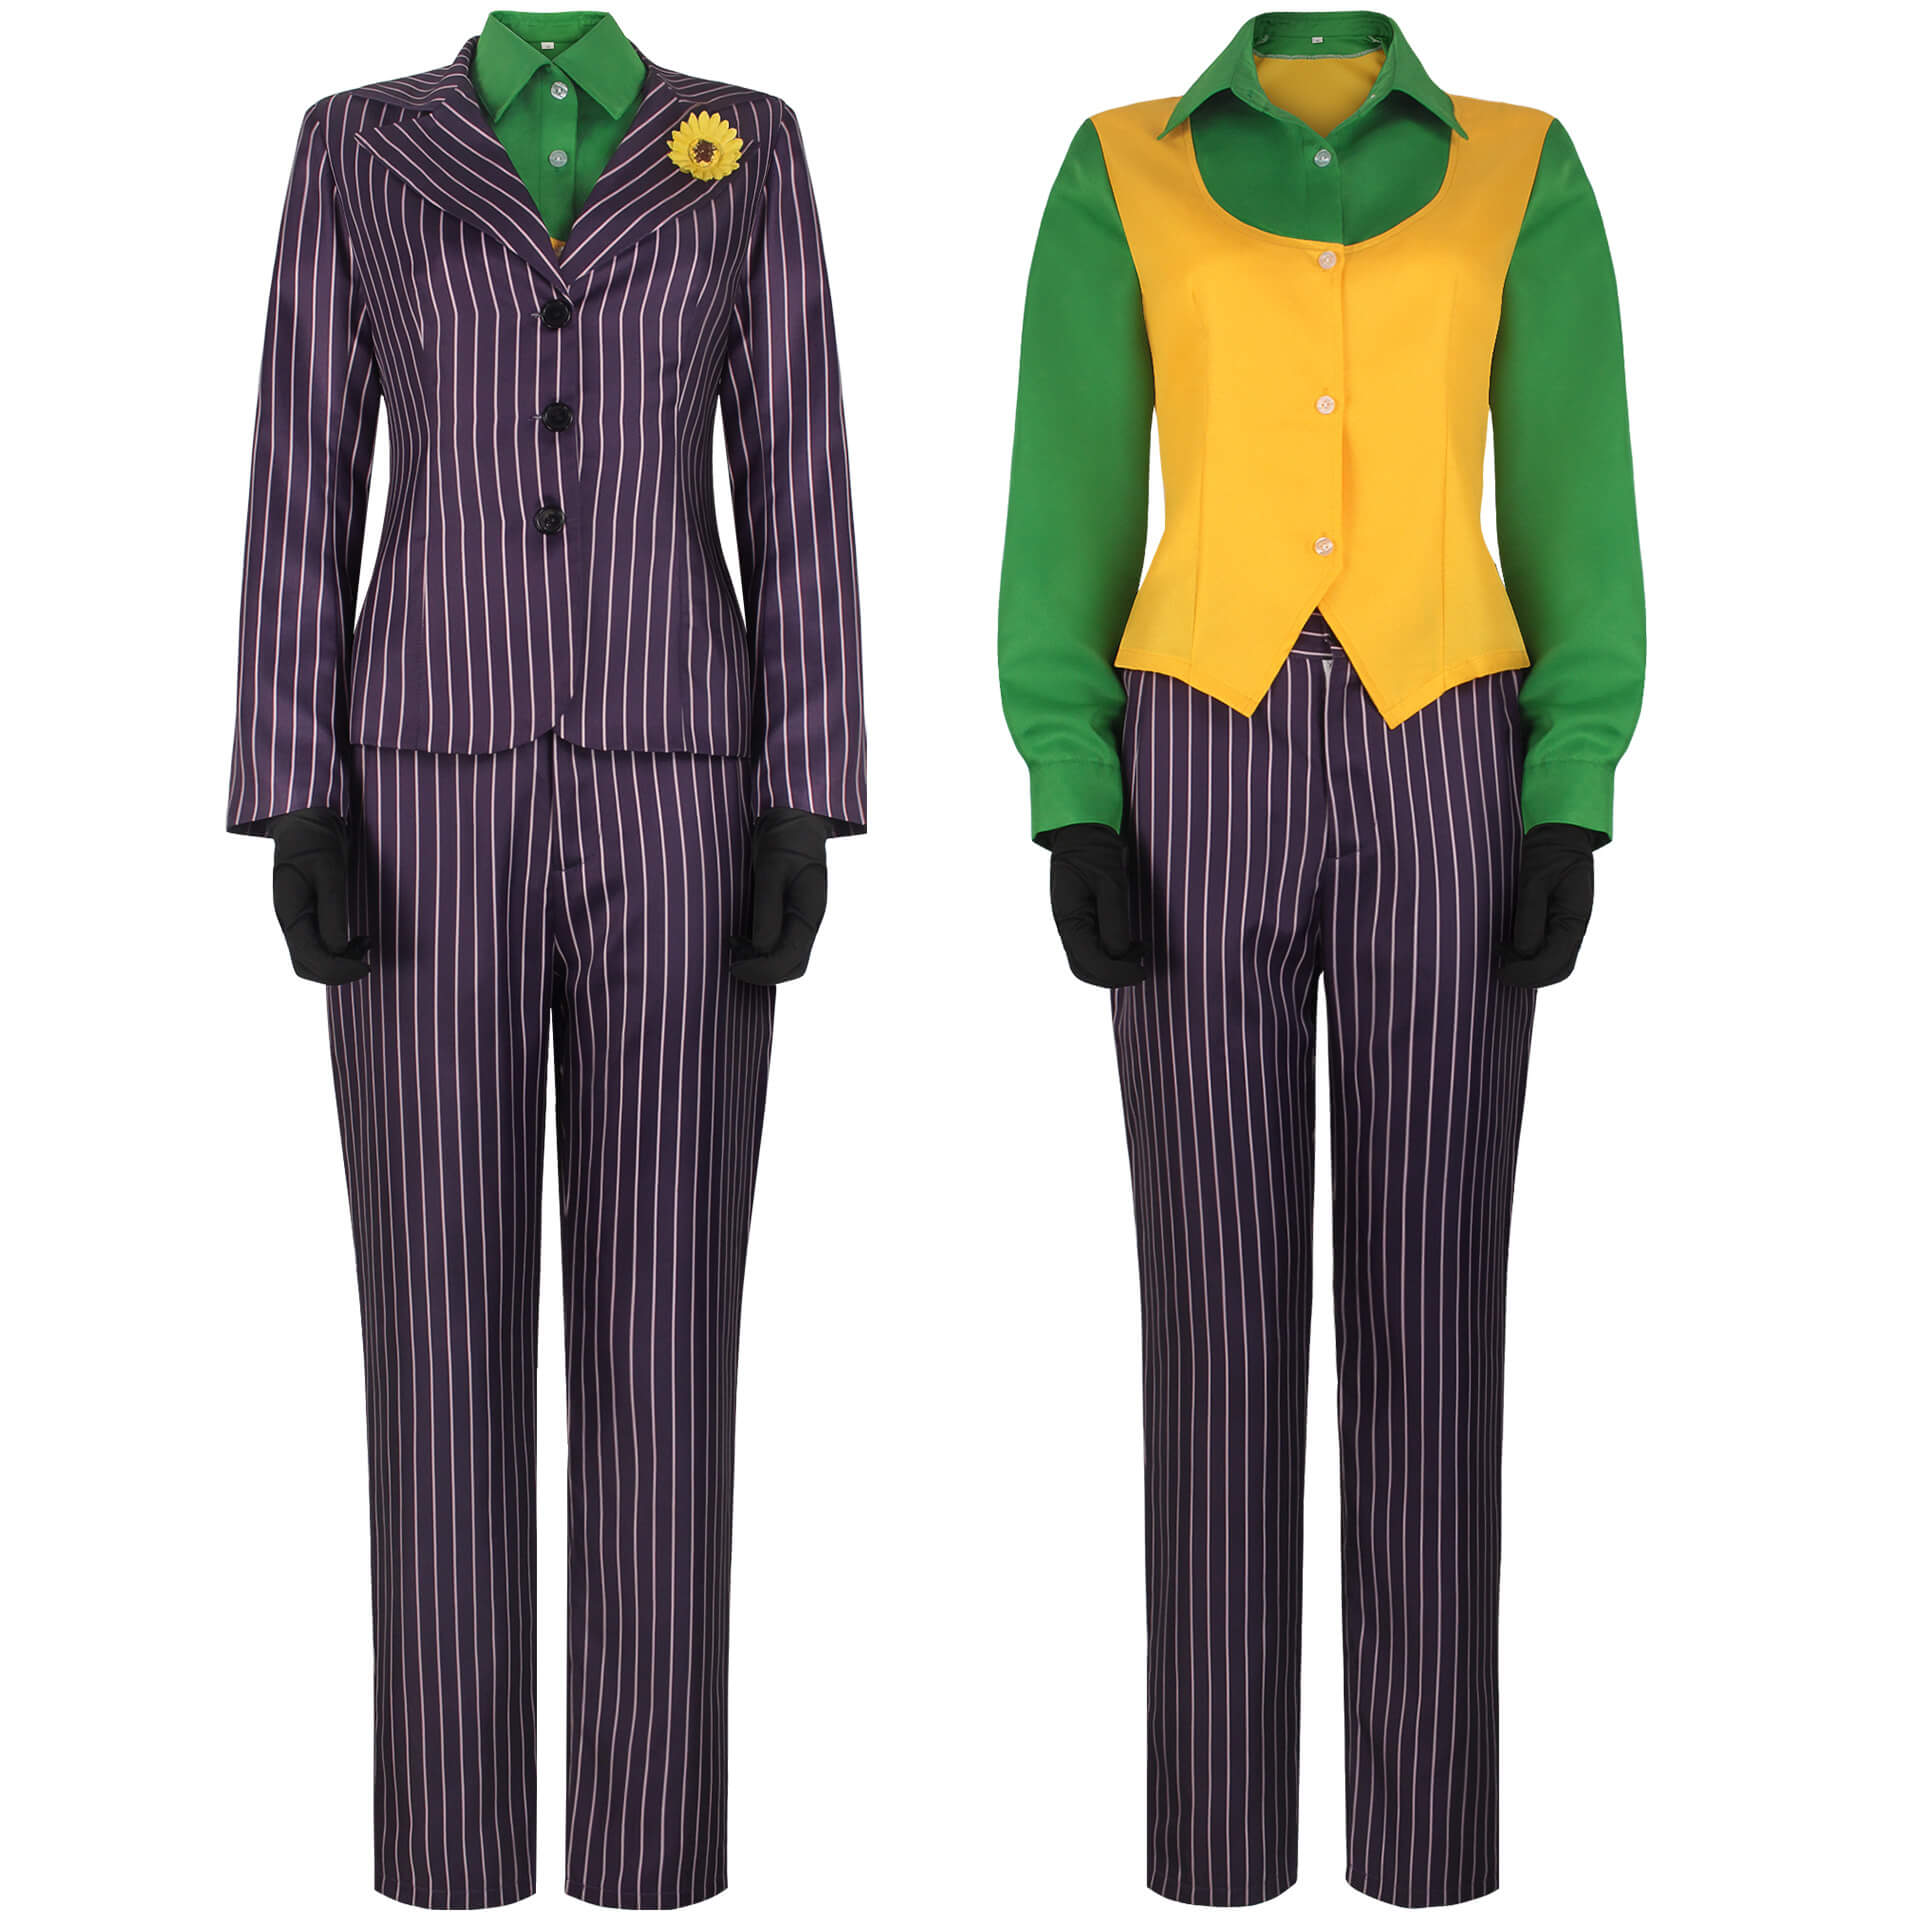 Women Joker Costume Striped Purple Uniform Party Outfit Femal Joker Halloween Suit